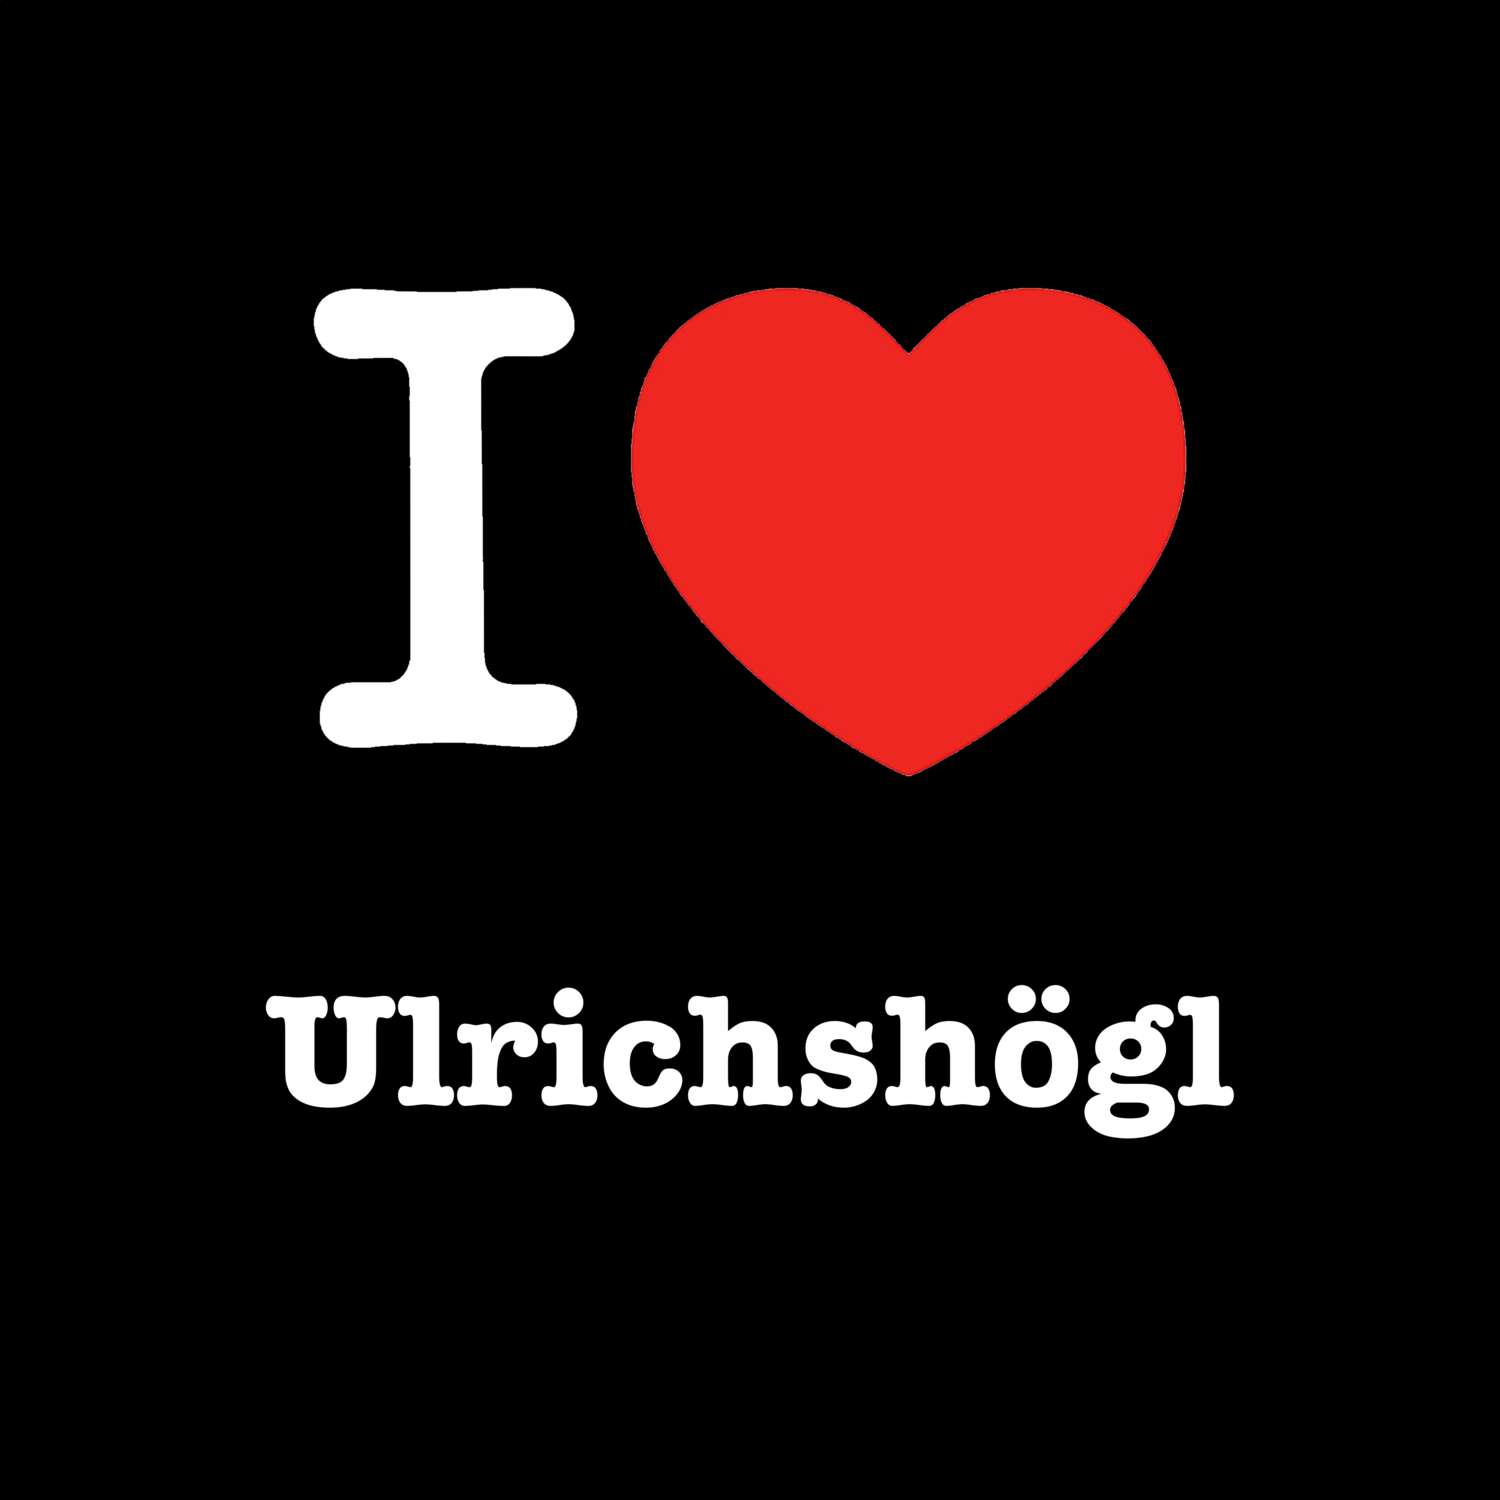 Ulrichshögl T-Shirt »I love«